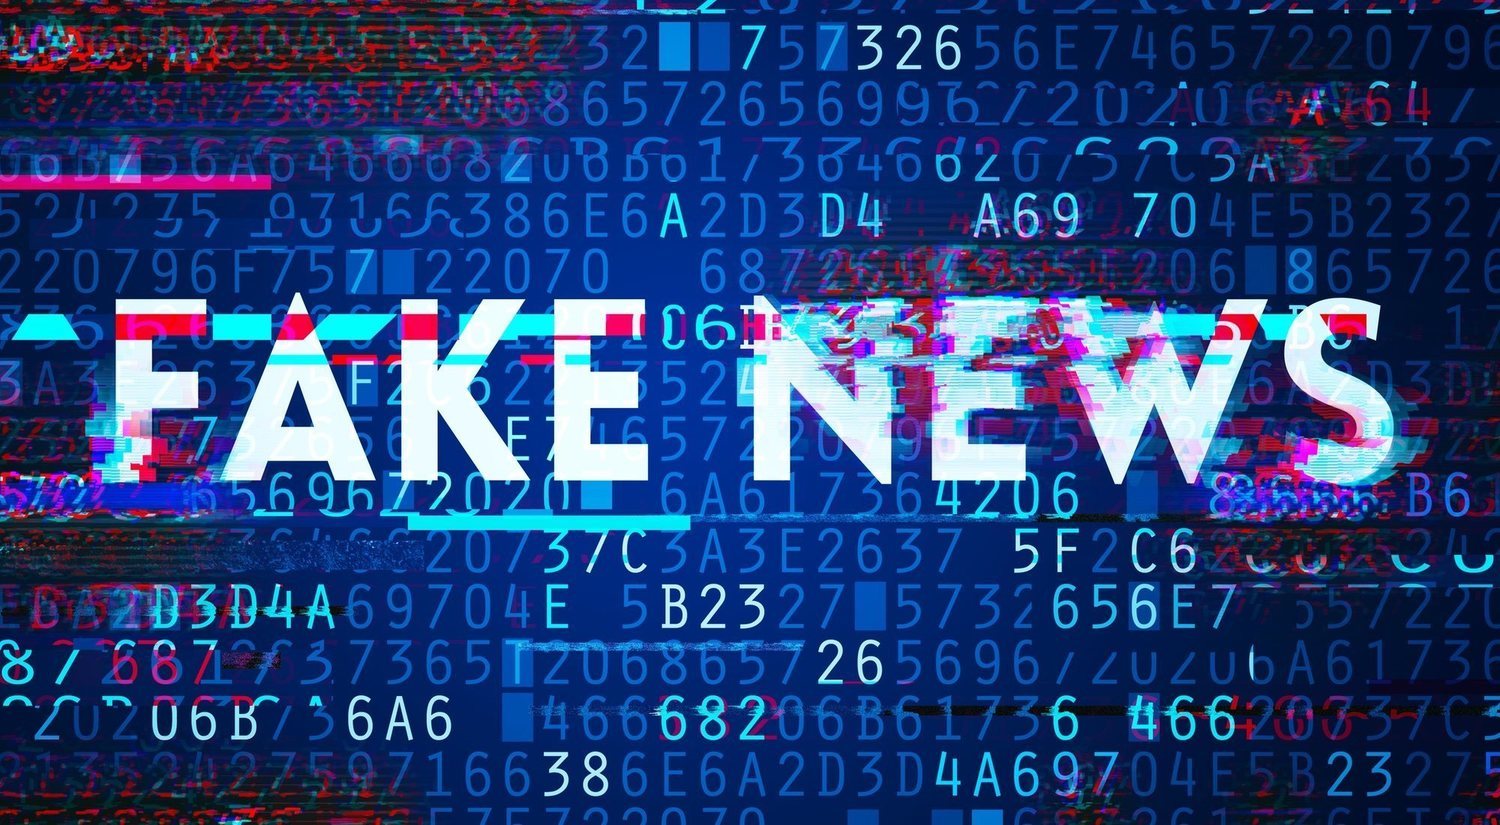 Qué son las fake news y cómo evitar caer en ellas: trucos y conceptos